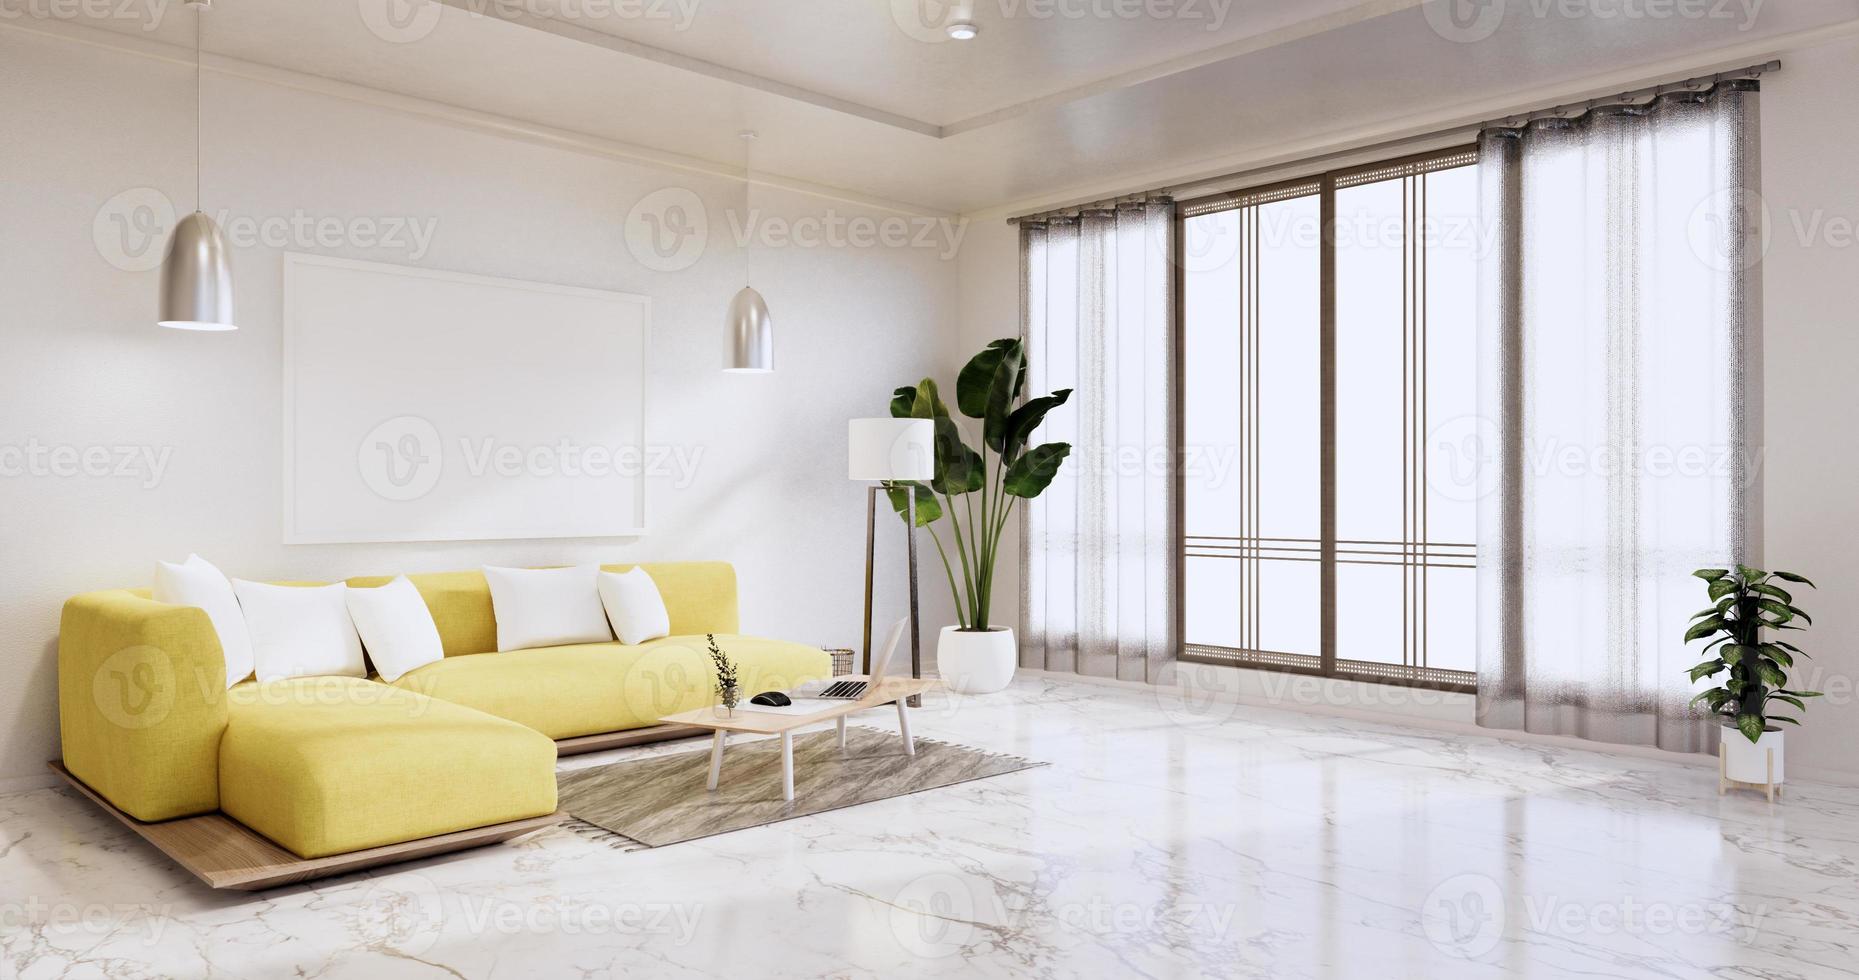 Interieur, Wohnzimmer moderner Minimalist hat gelbes Sofa auf weißer Wand und Granitfliesenboden. 3D-Rendering foto